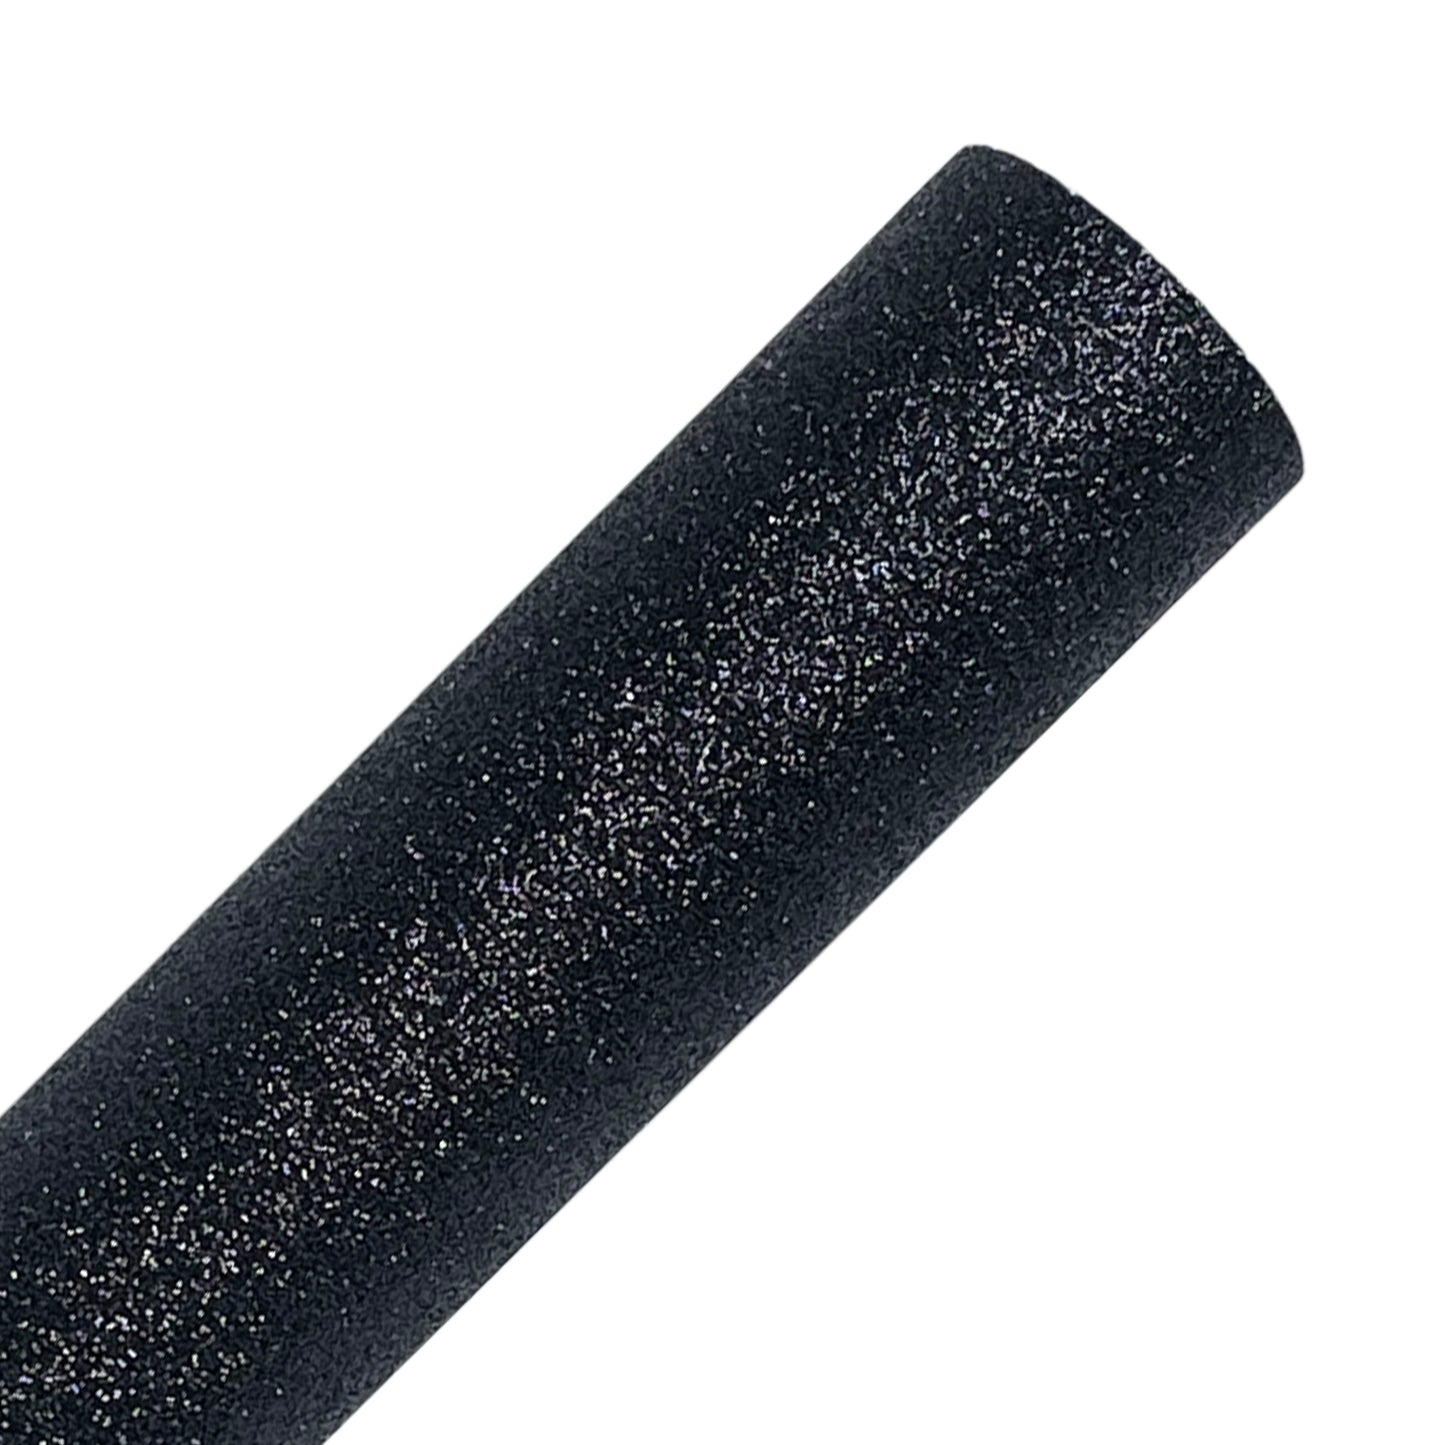 Black Glitter Heat Transfer Vinyl Rolls By Craftables